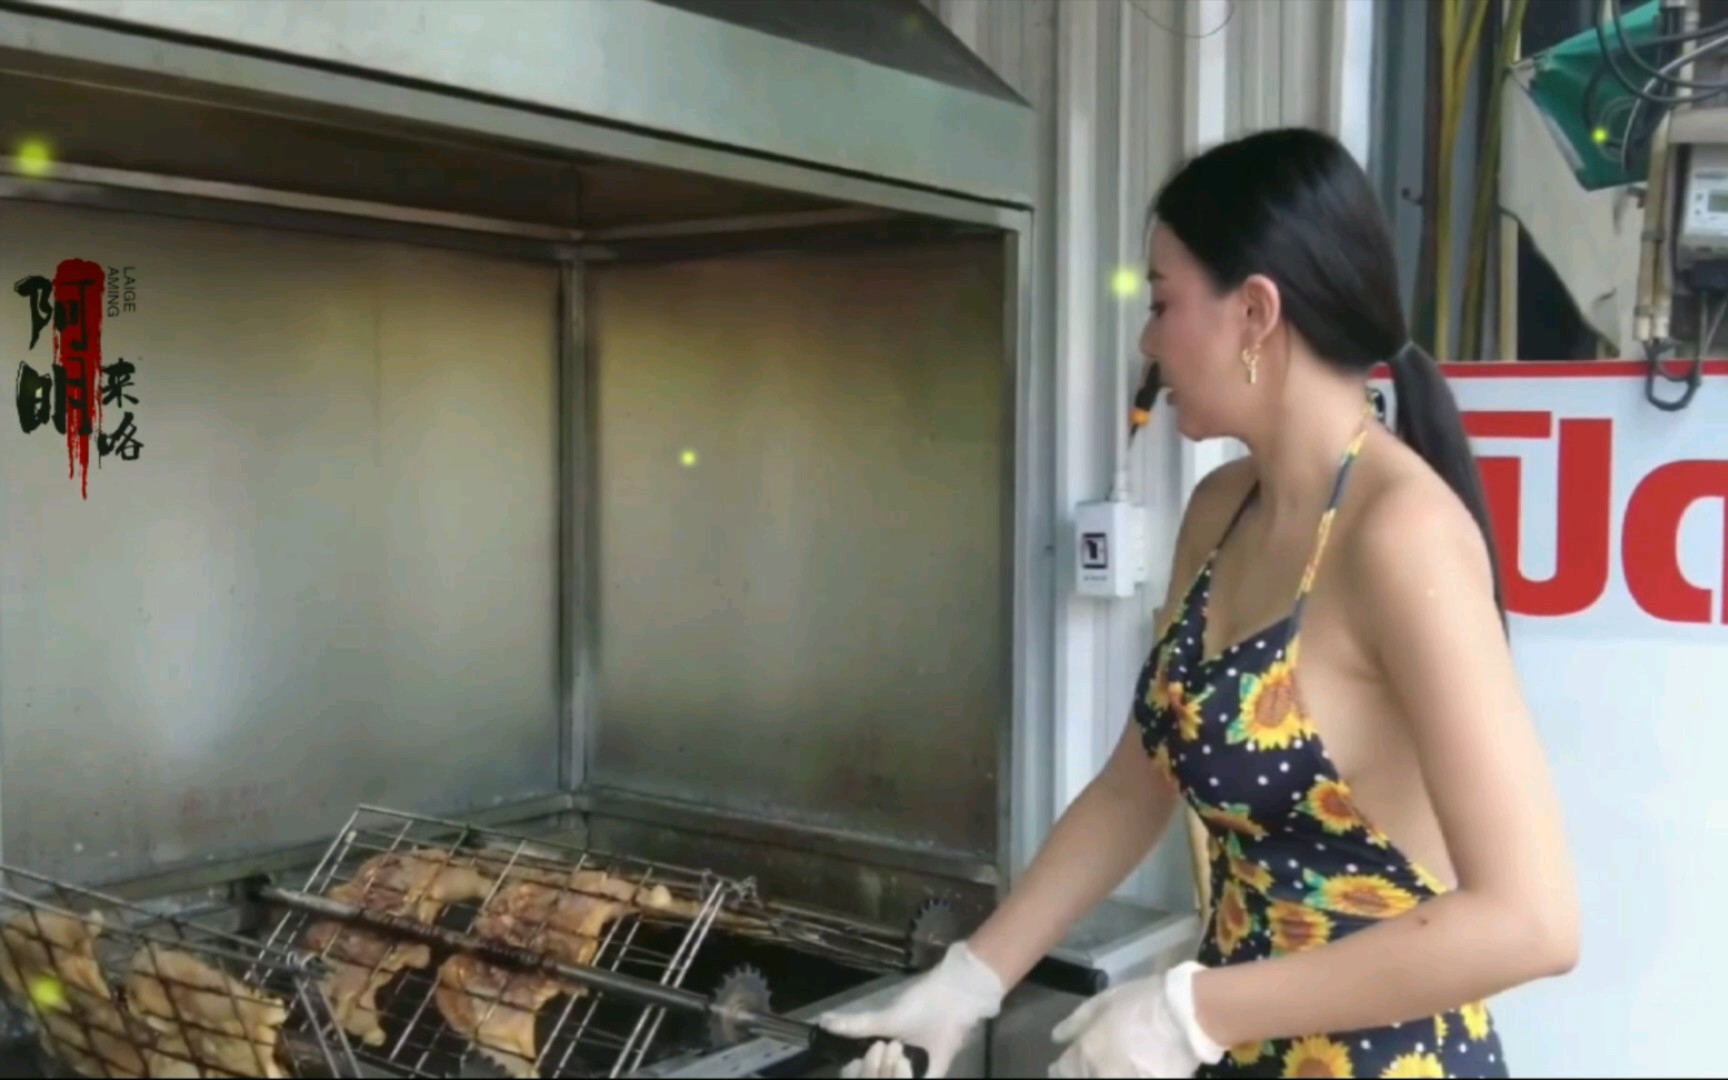 泰国街道食物烤鸡软焦点图象 库存照片. 图片 包括有 油煎, 食物, 可口, 贝多芬, 轰隆的, 午餐 - 120277084